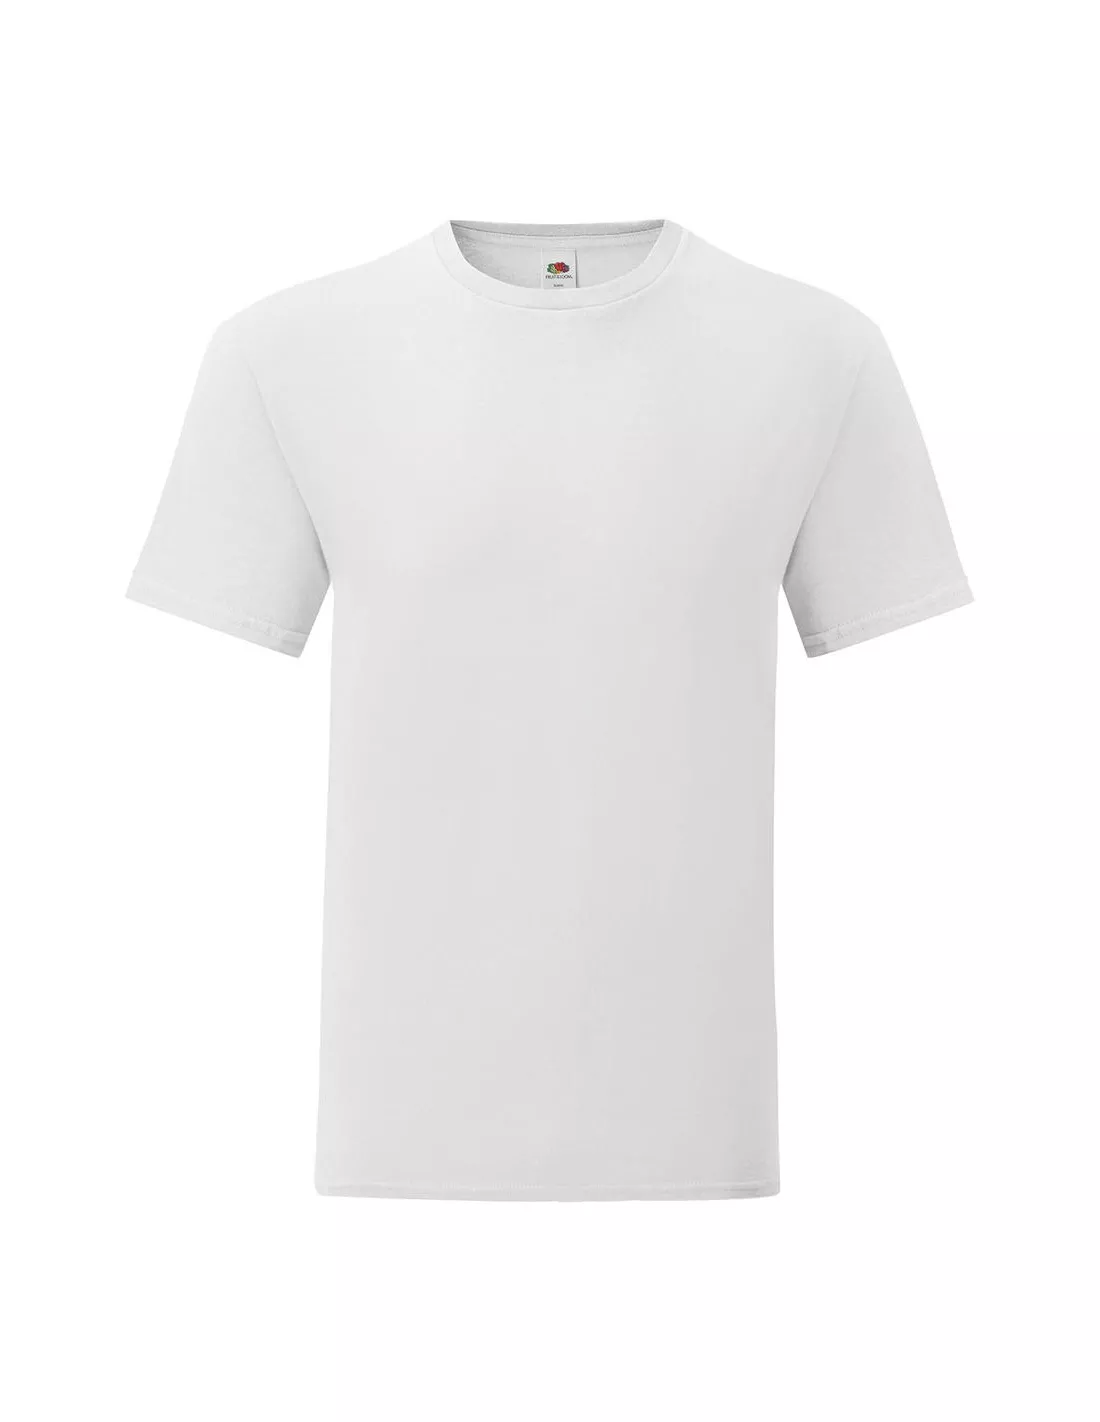 Camisetas algodón personalizadas hombre